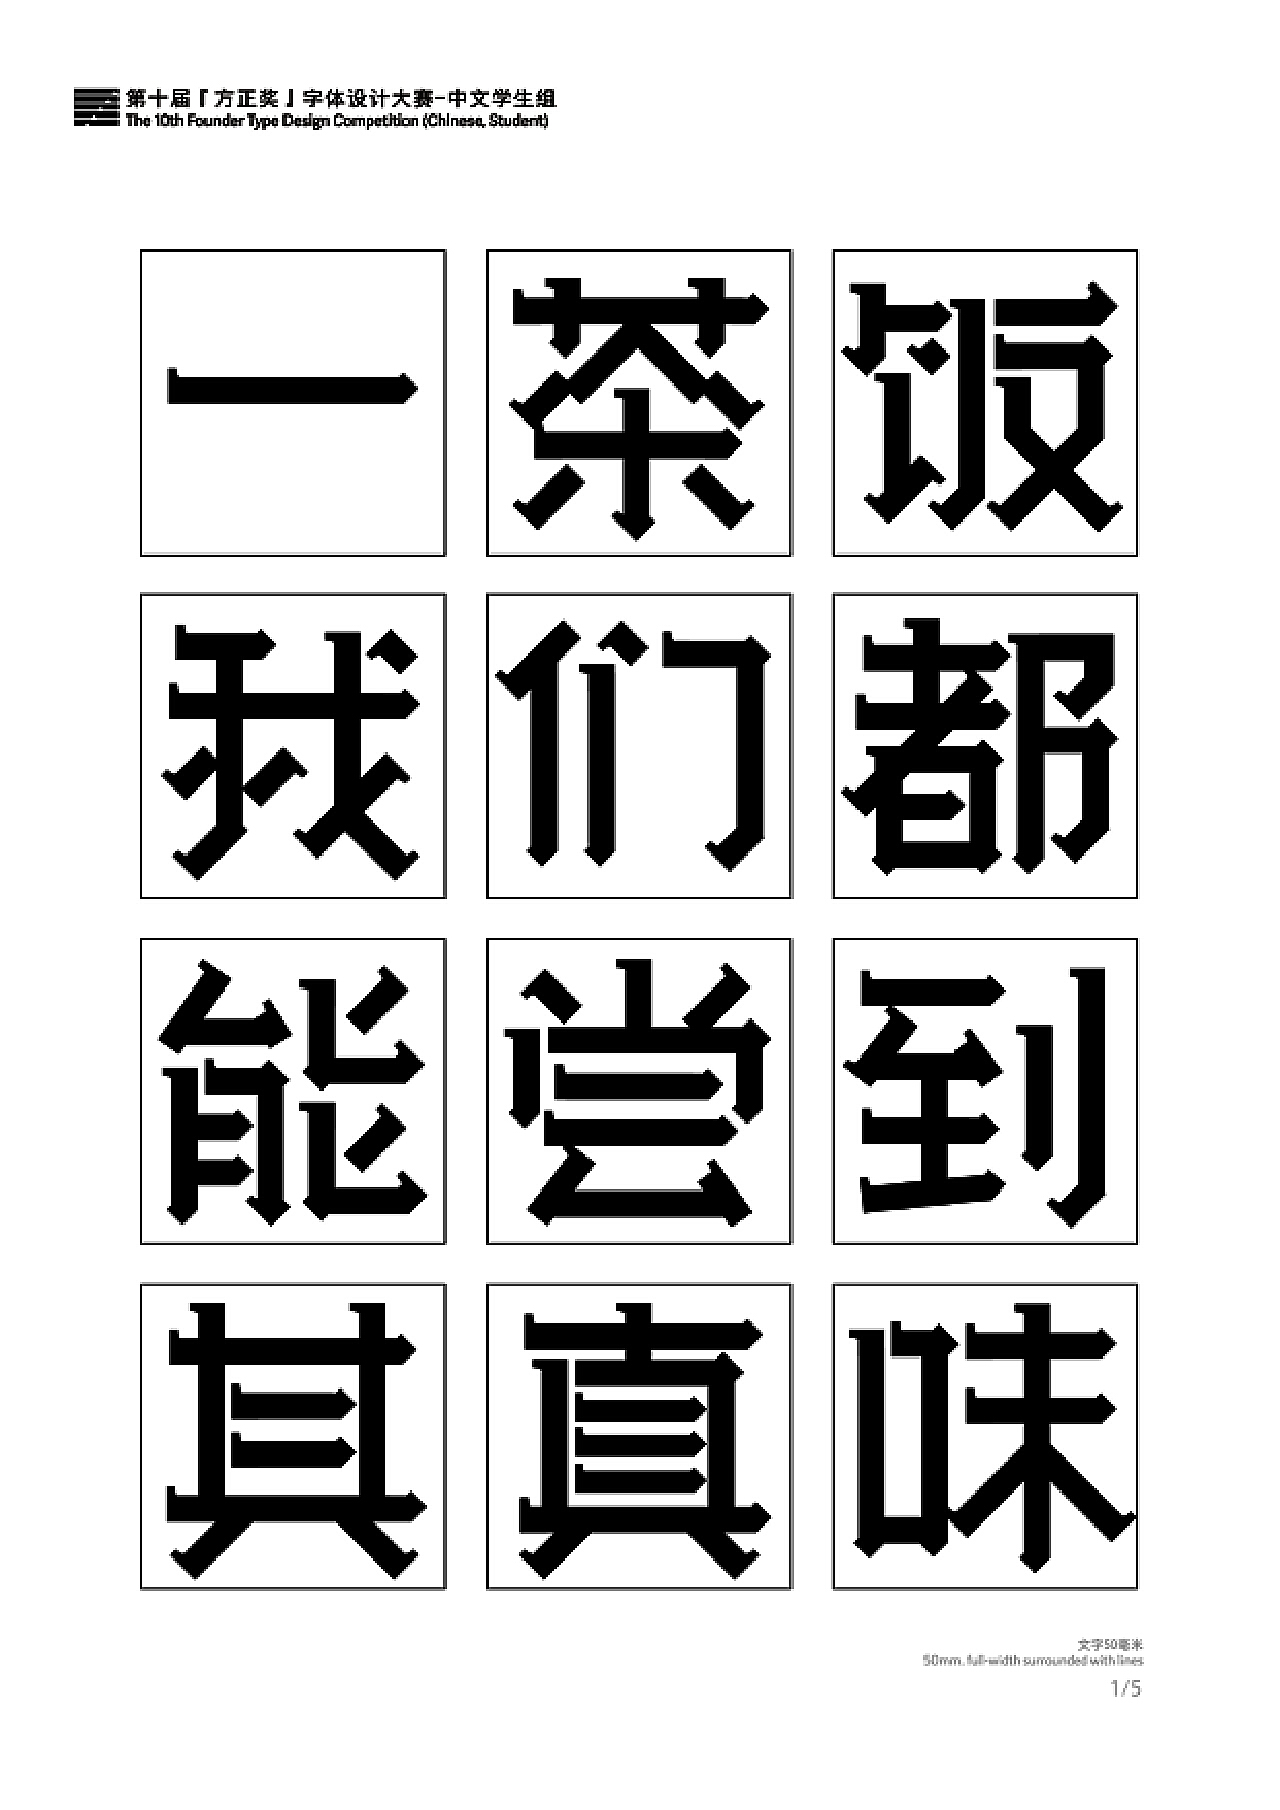 第十届方正字体大赛获奖作品欣赏（中文学生组） - AD518.com - 最设计